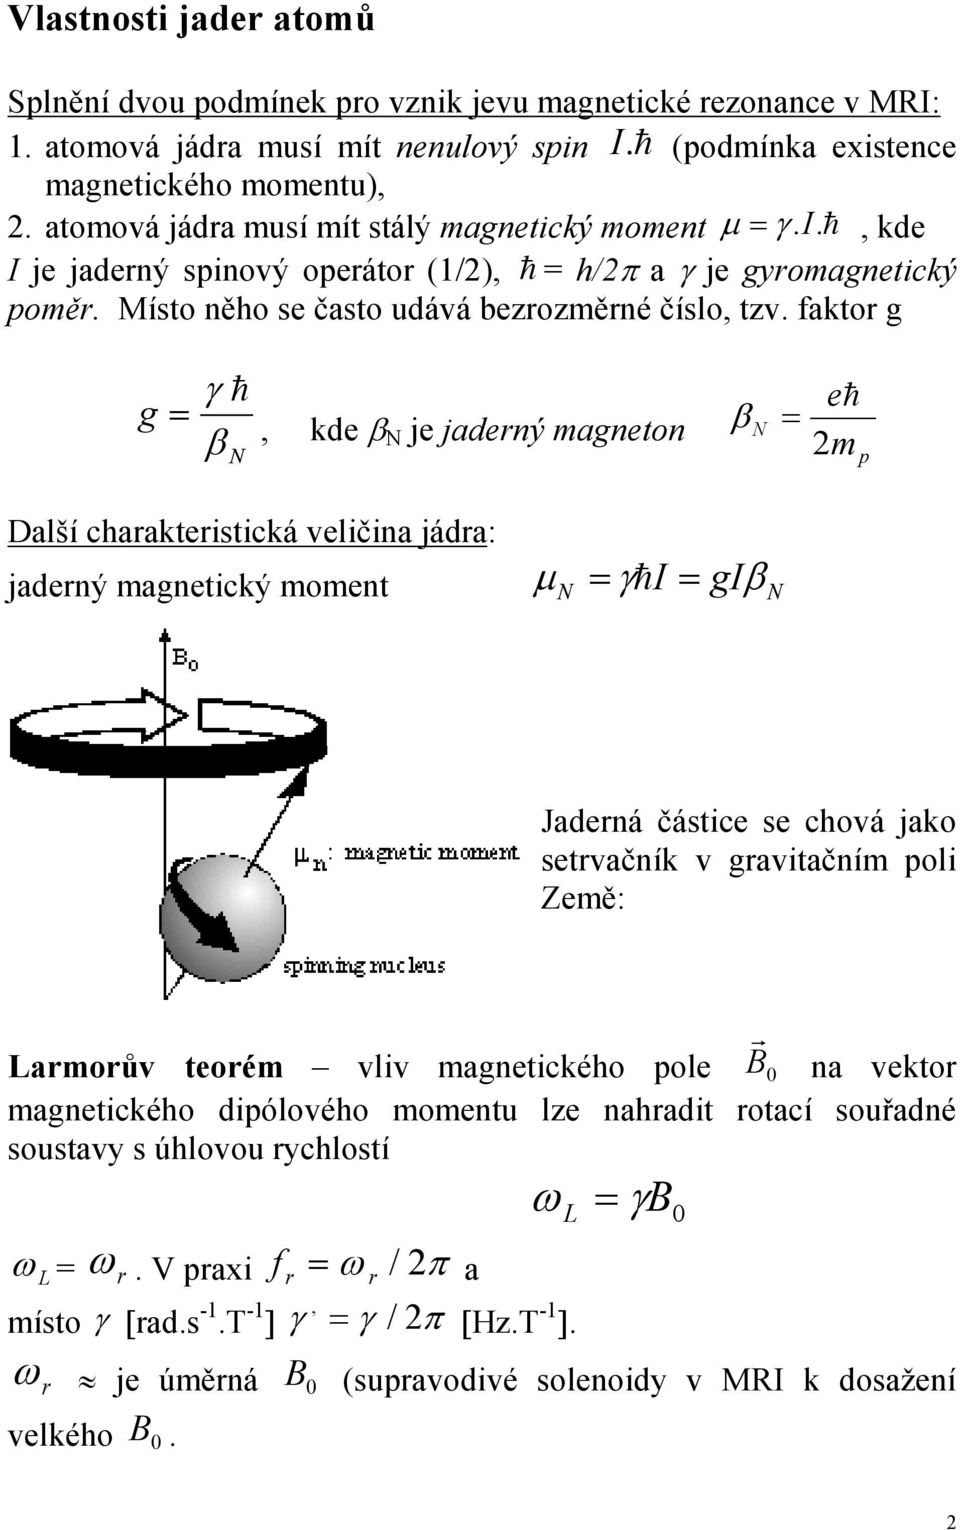 jaderný magneton β N = eh 2m p Další charakteristická veličina jádra: jaderný magnetický moment µ = γh I = N giβ N Jaderná částice se chová jako setrvačník v gravitačním poli Země: Larmorův teorém